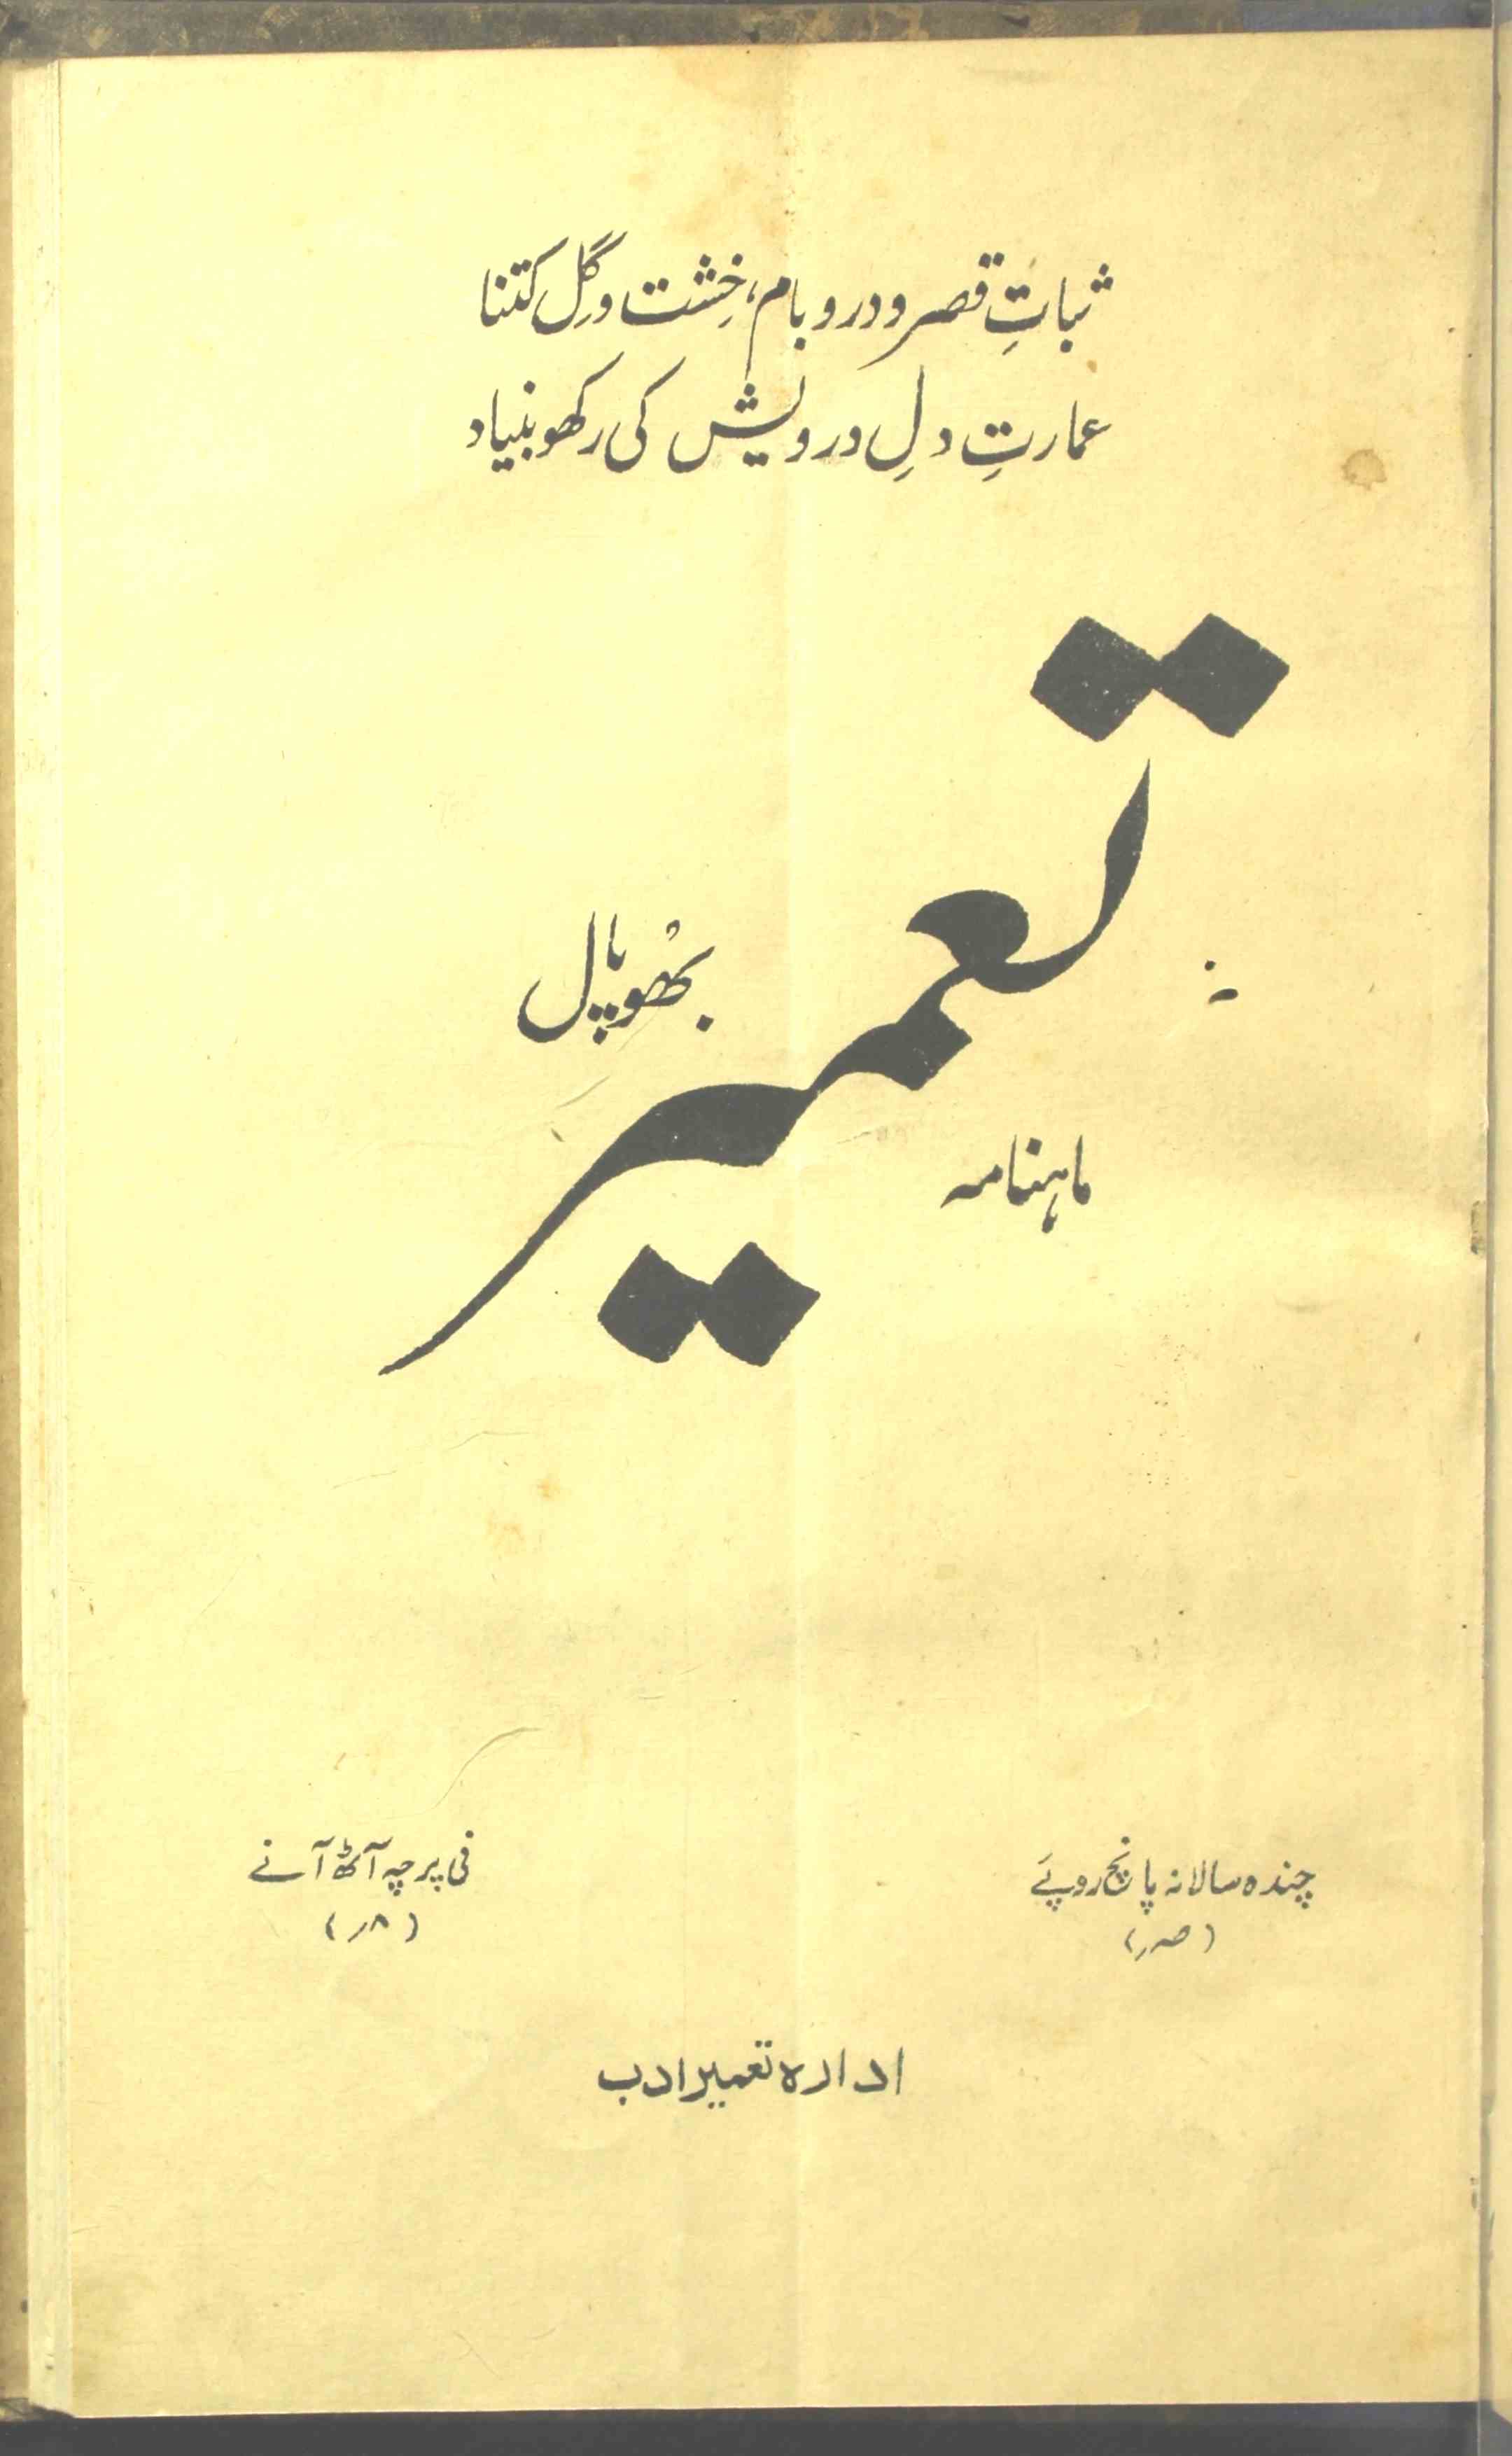 Tameer Jild 1 Shumara 3 March 1947